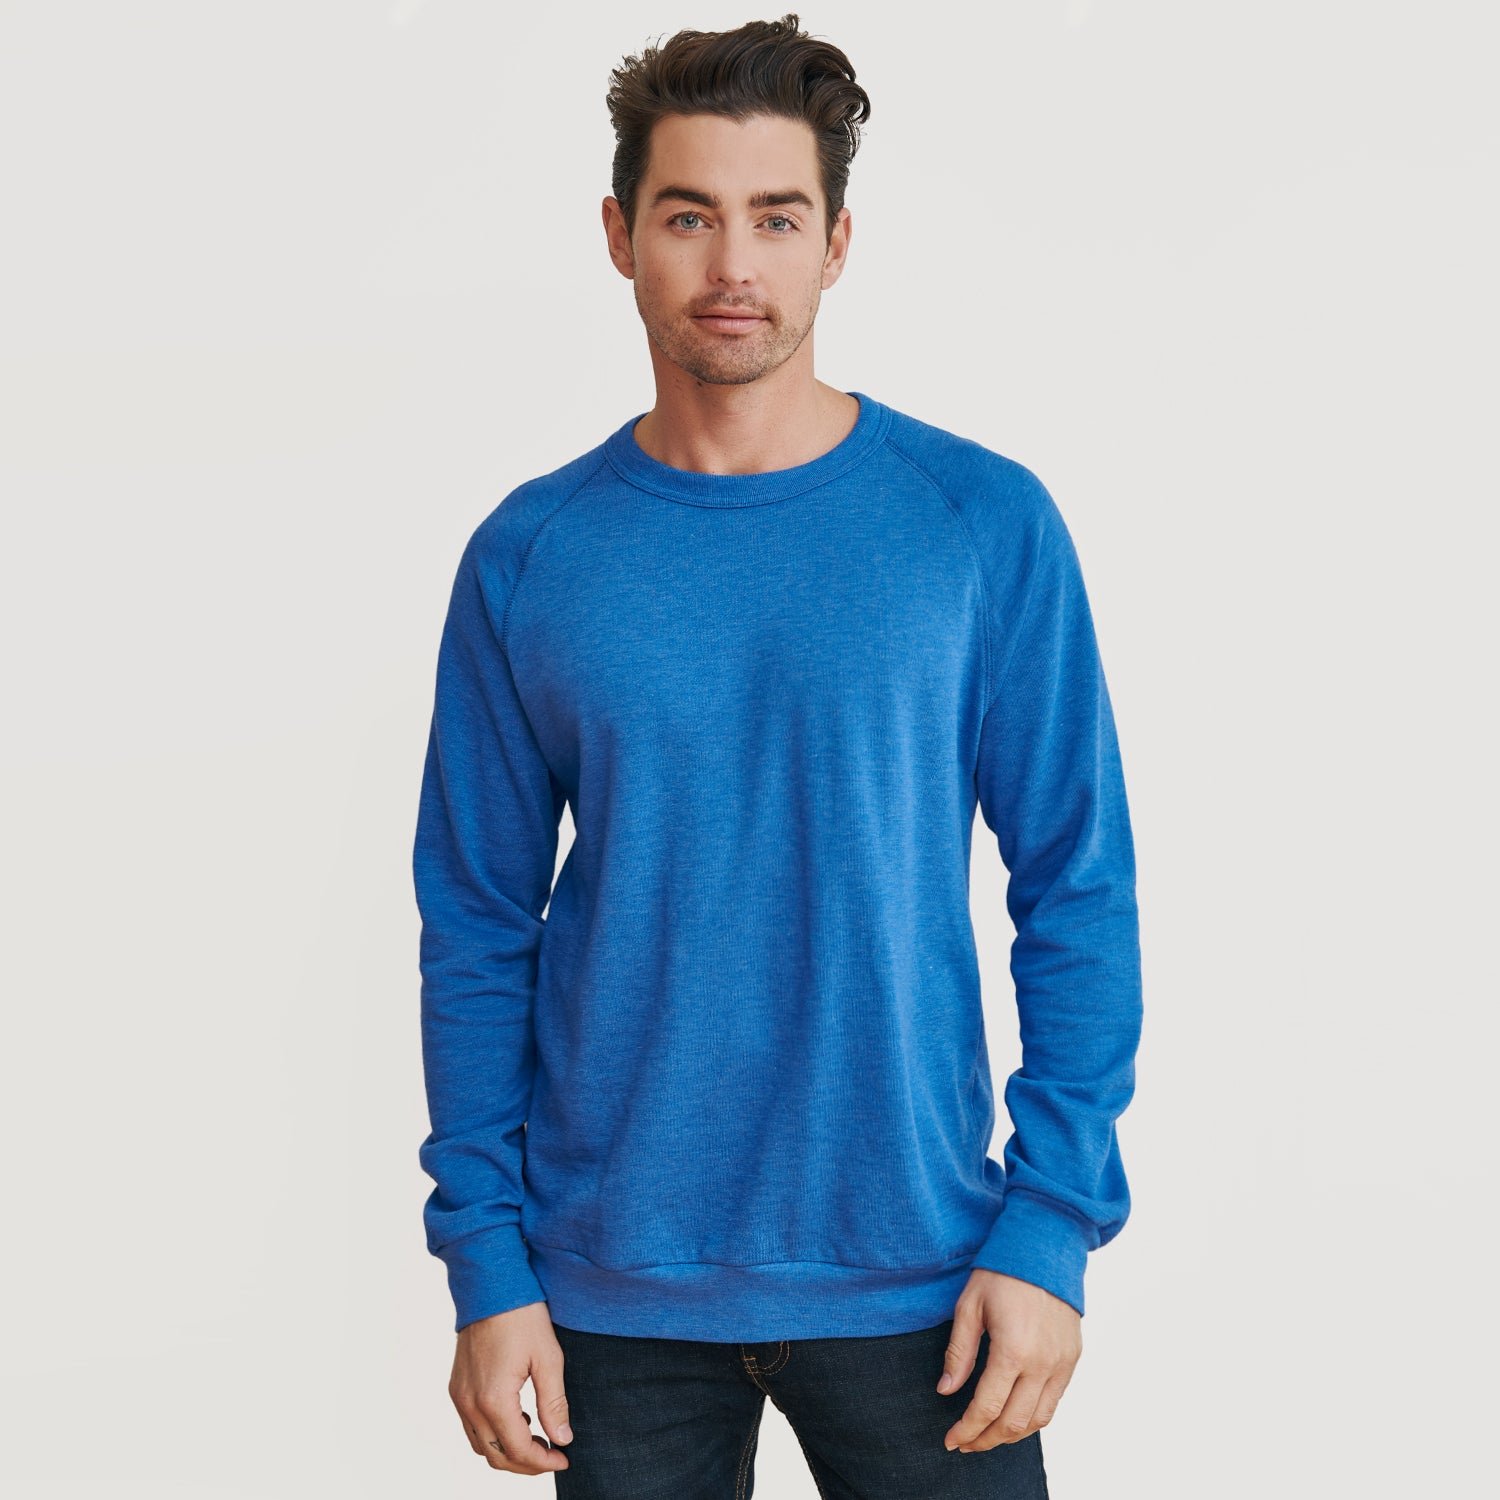 Pacific Blue Fleece Pull Over Sweatshirt